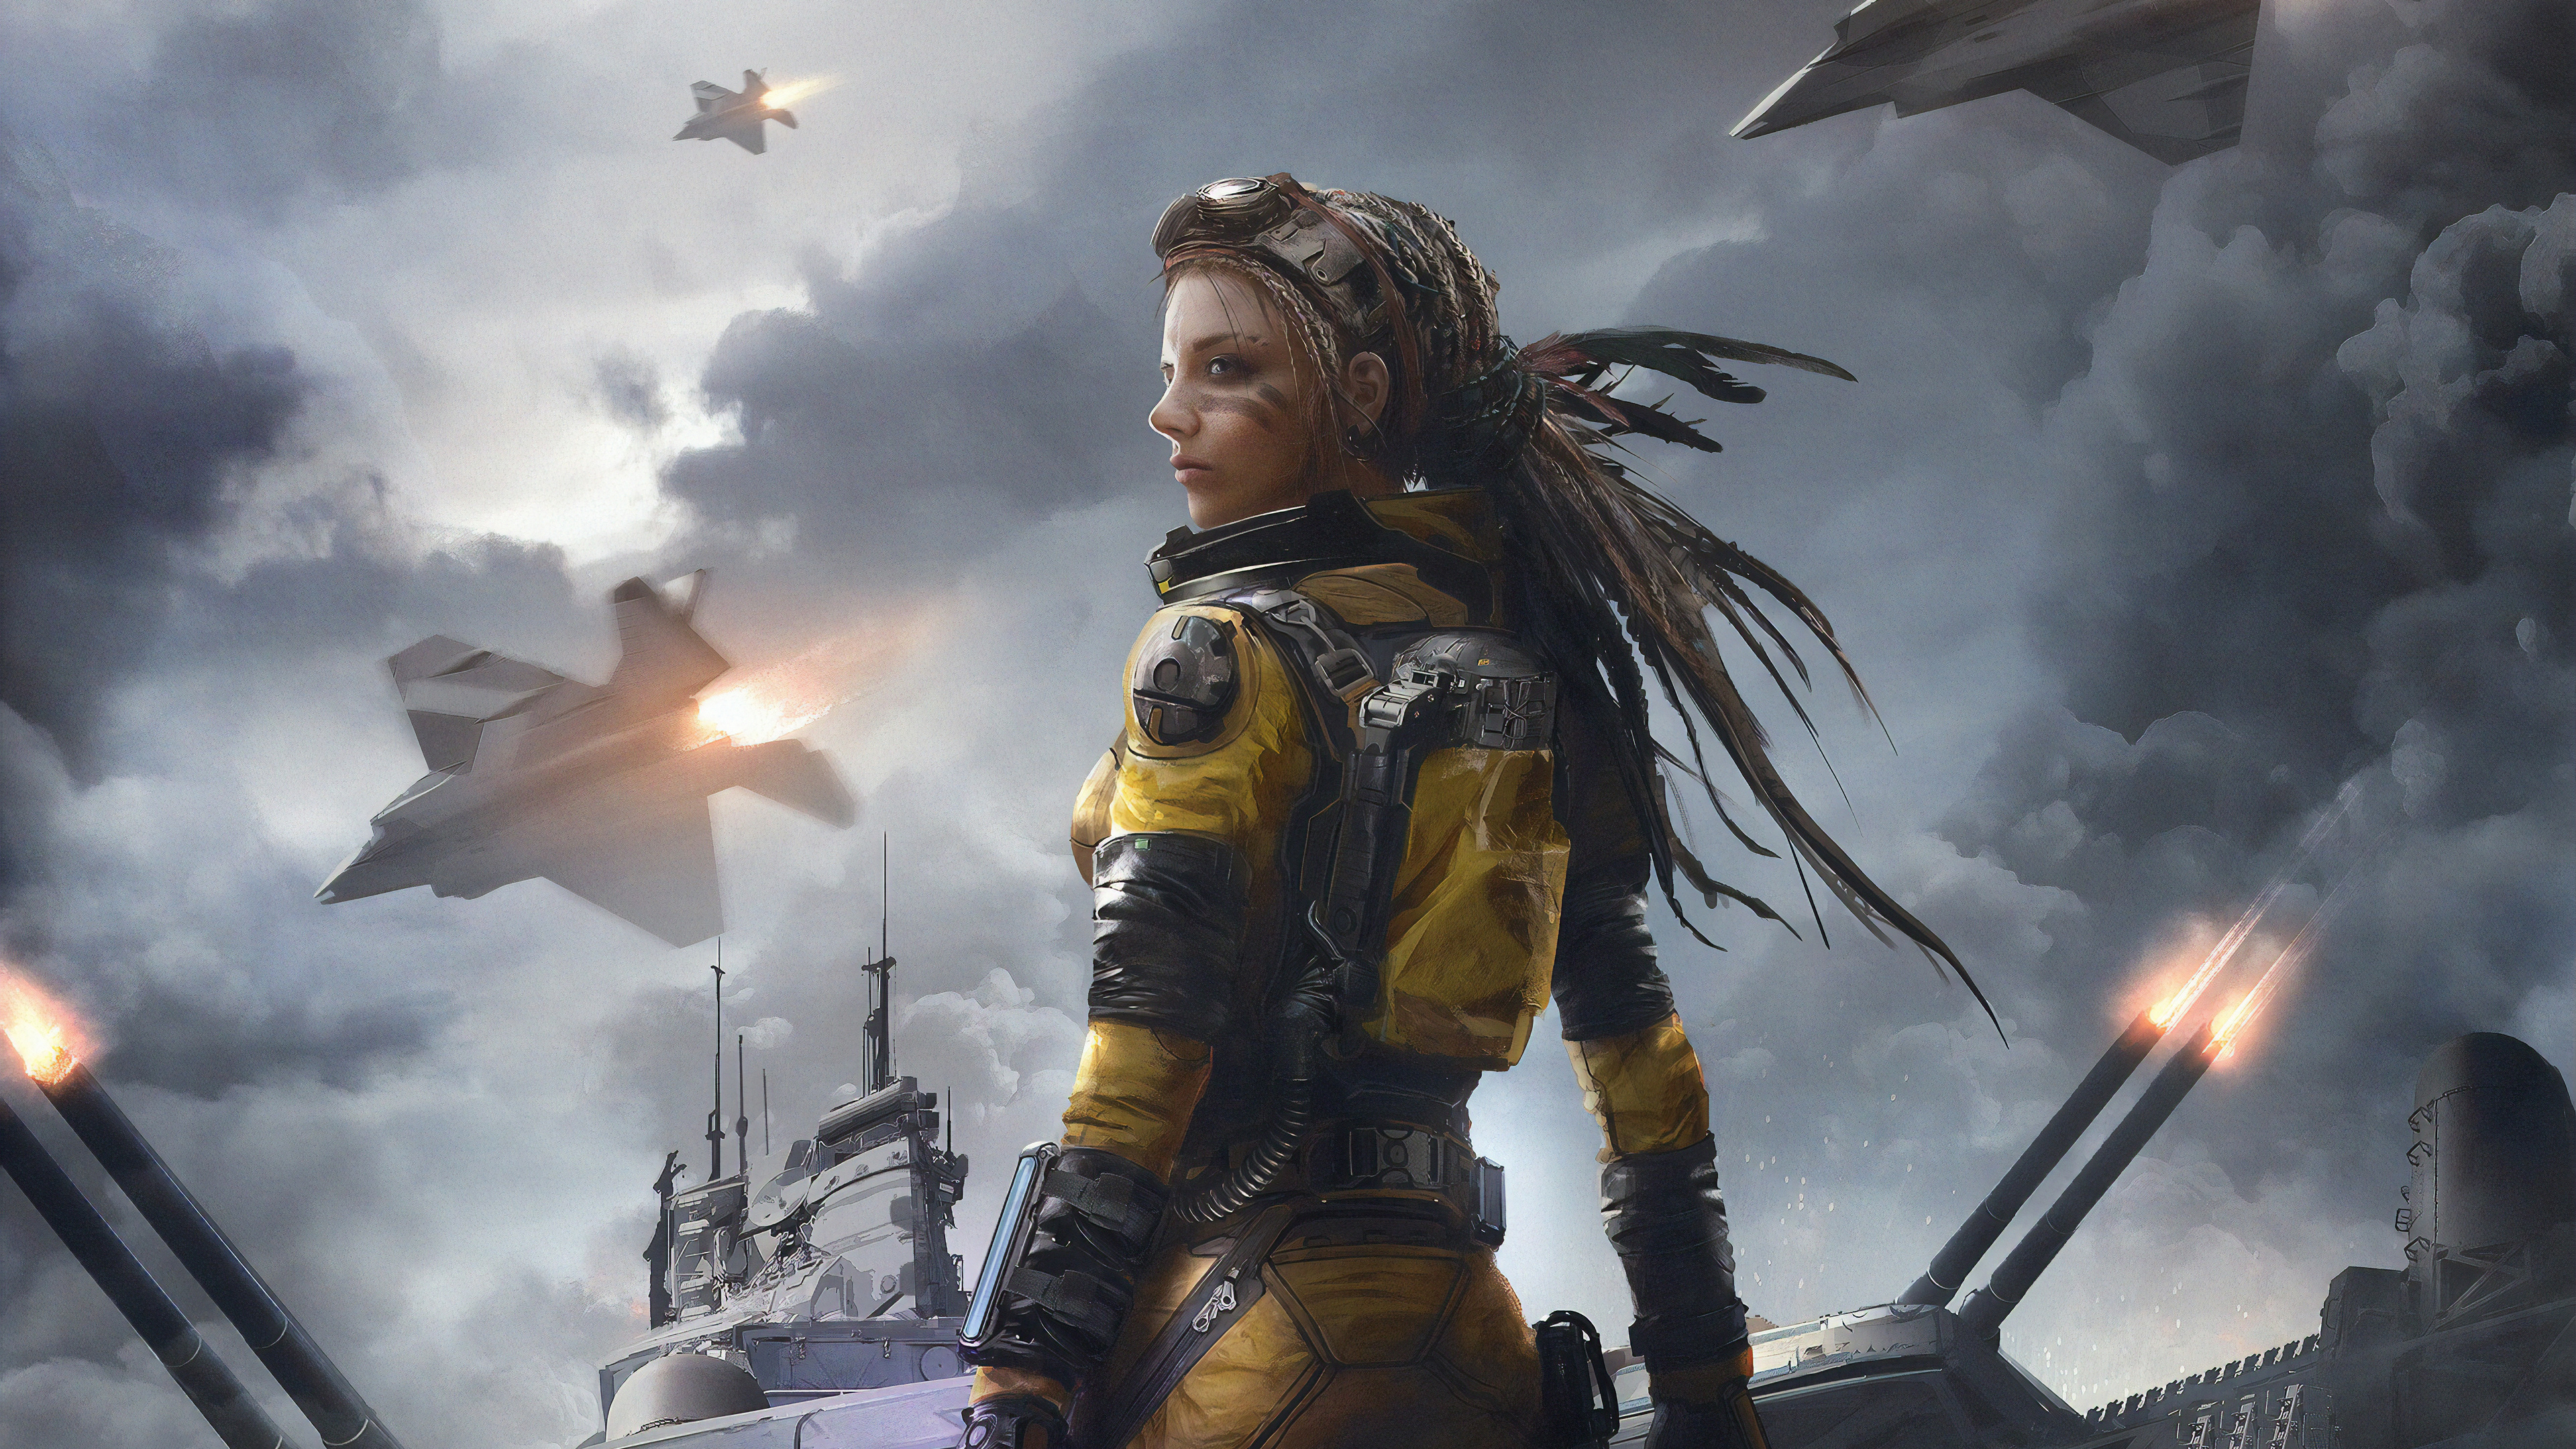 Download mobile wallpaper Sci Fi, Jet Fighter, Dreadlocks, Women Warrior, Woman Warrior for free.